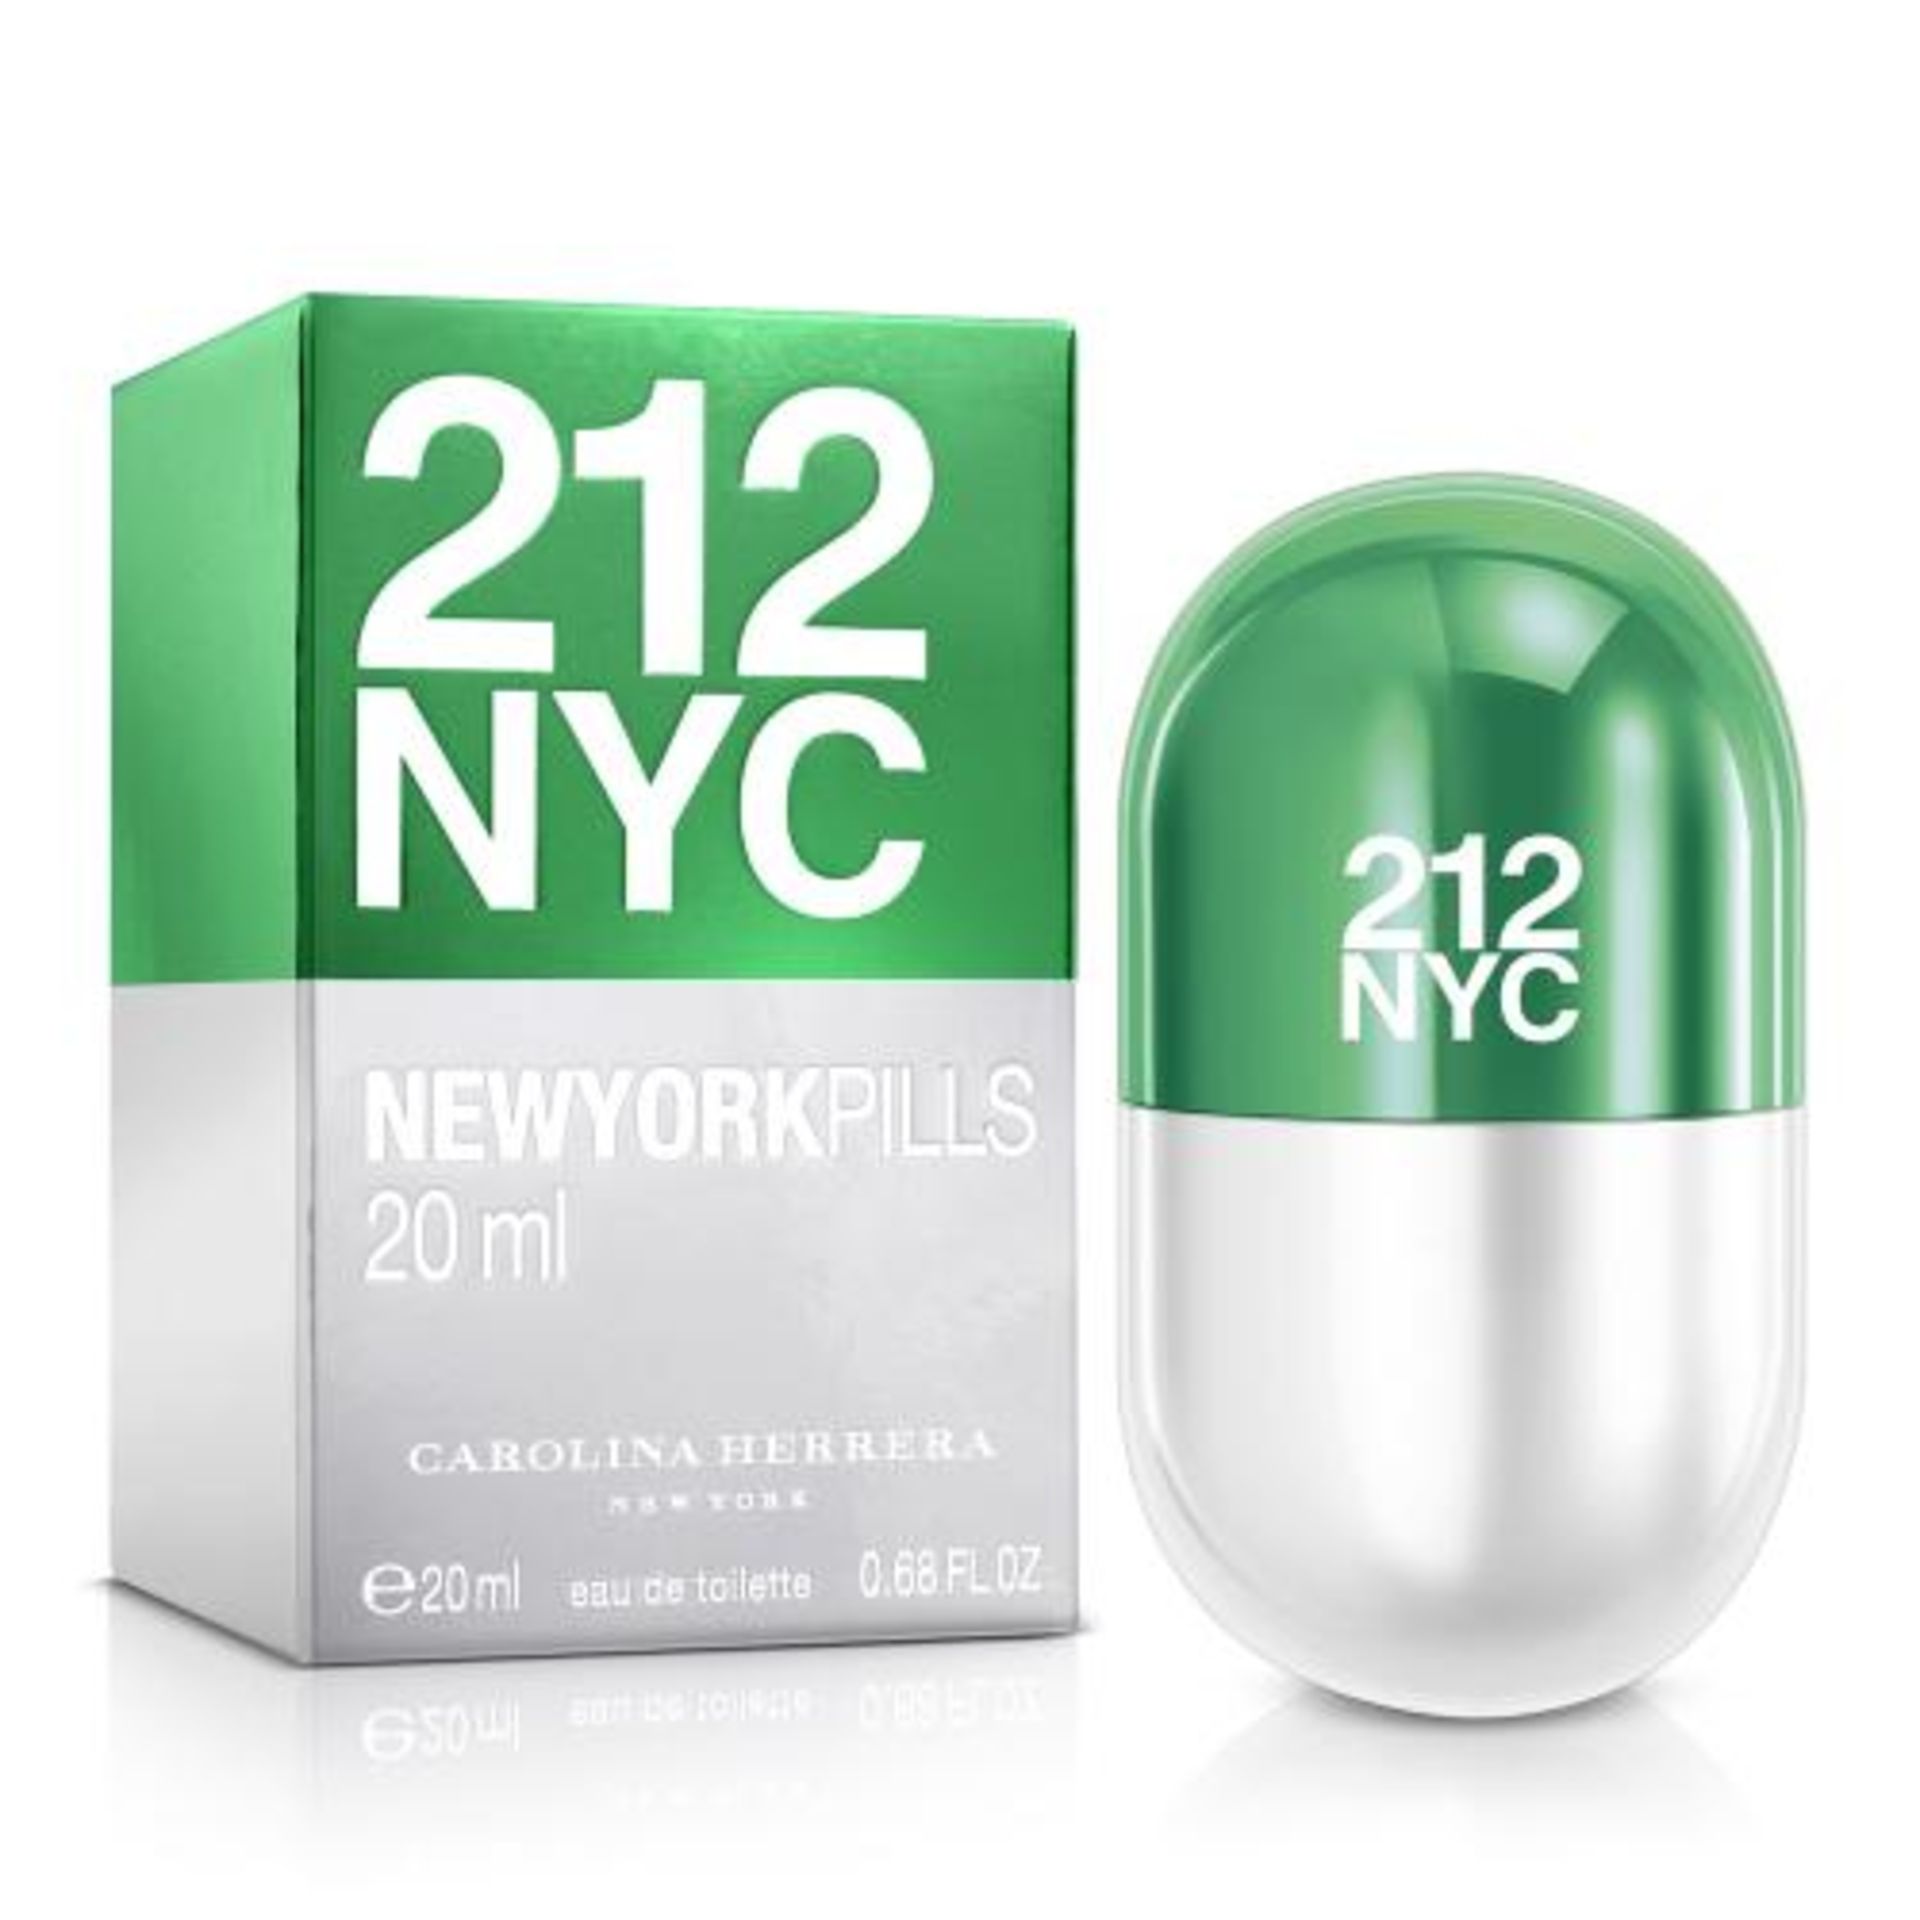 + VAT Brand New Carolina Herrera 212 NYC New York Pills Spray For Women 20ml EDT ISP £27.25 (Red